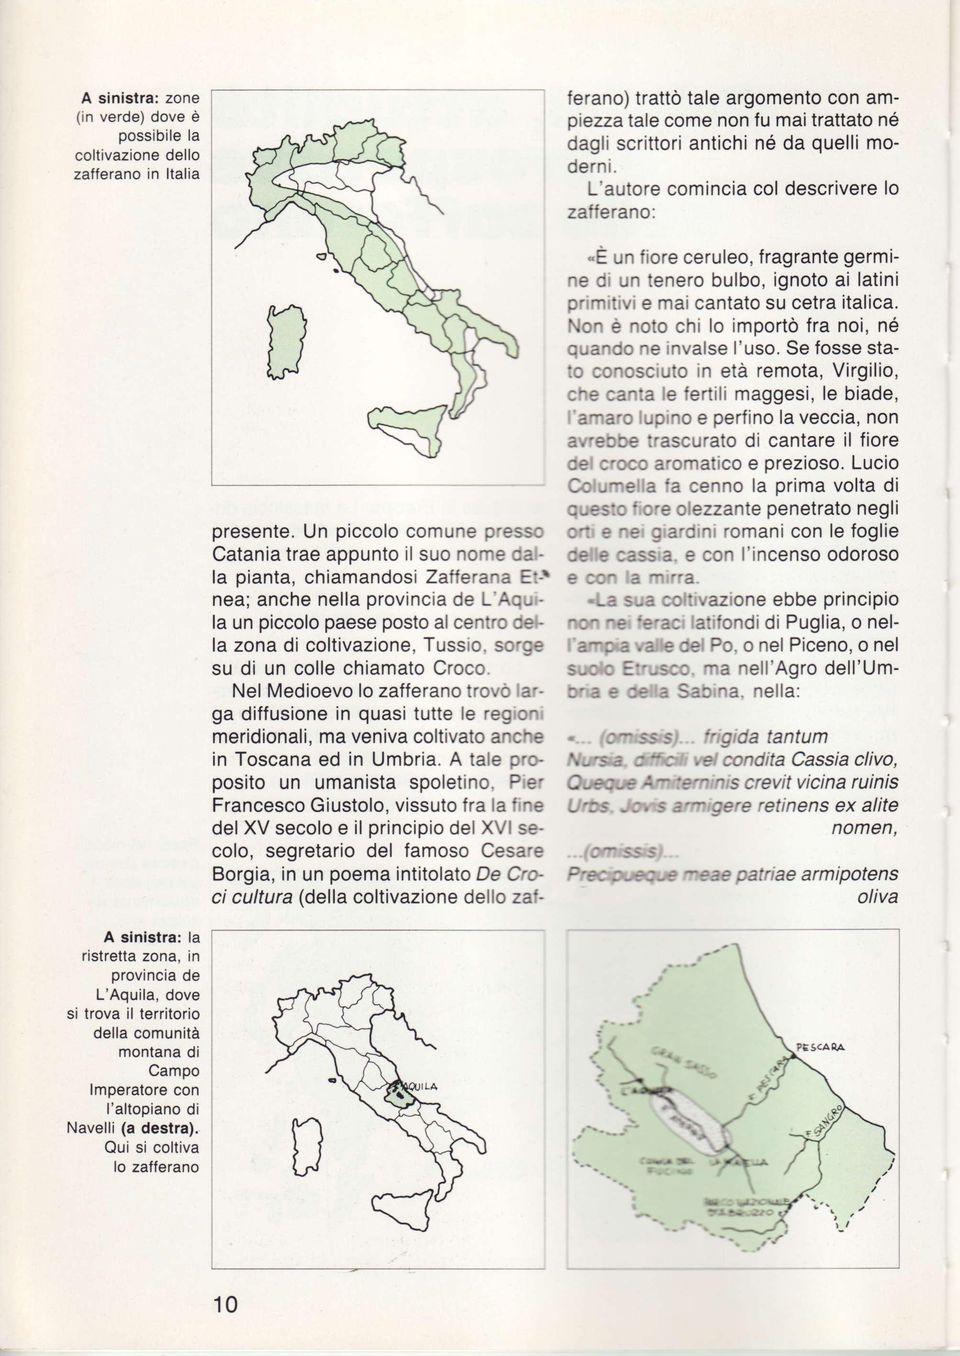 Un piccolo comune presso Catania trae appunto il suo nome da} la pianta, chiamandosi Zafferana Et-r nea; anche nella provincia de L'Aquila un piccolo paese posto al centro della zona di coltivazione,